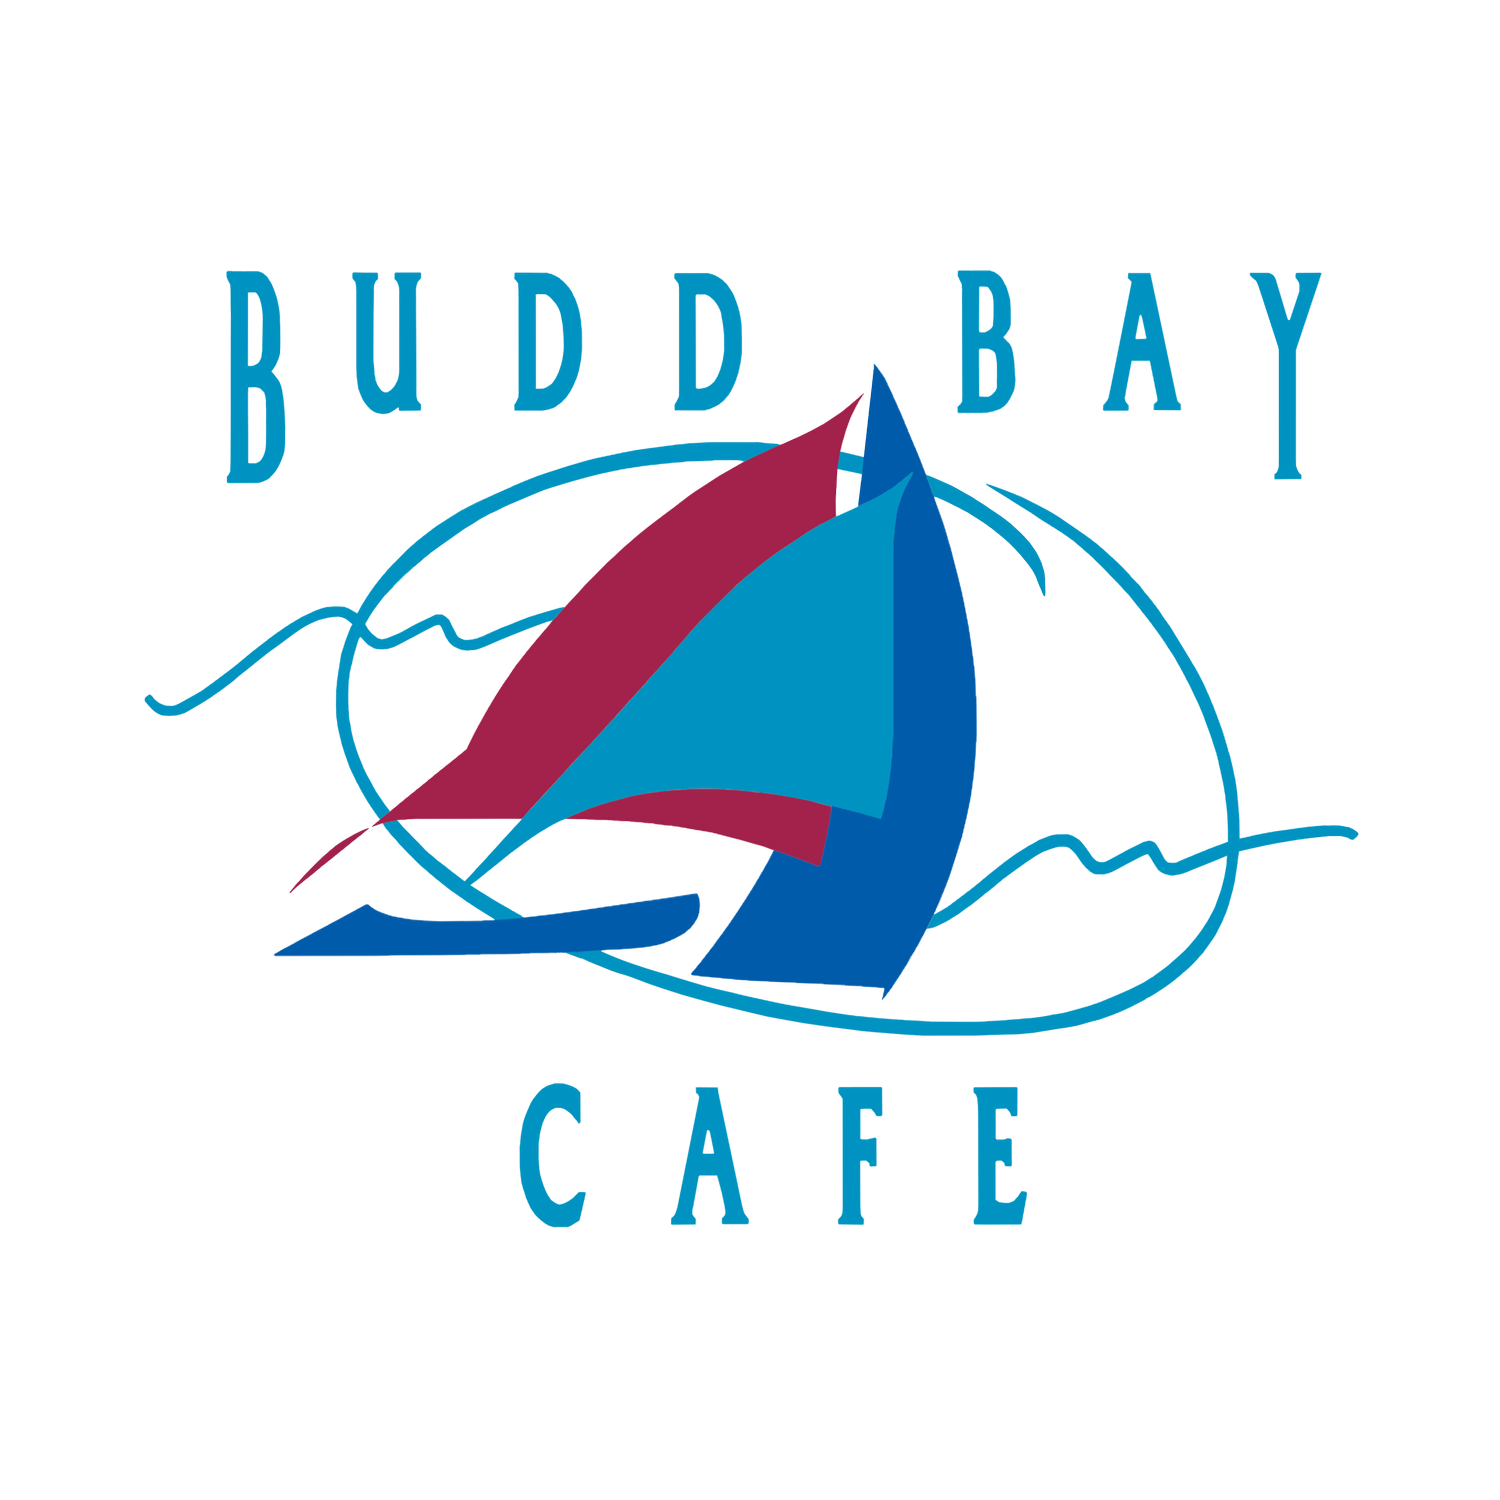 Budd Bay Cafe